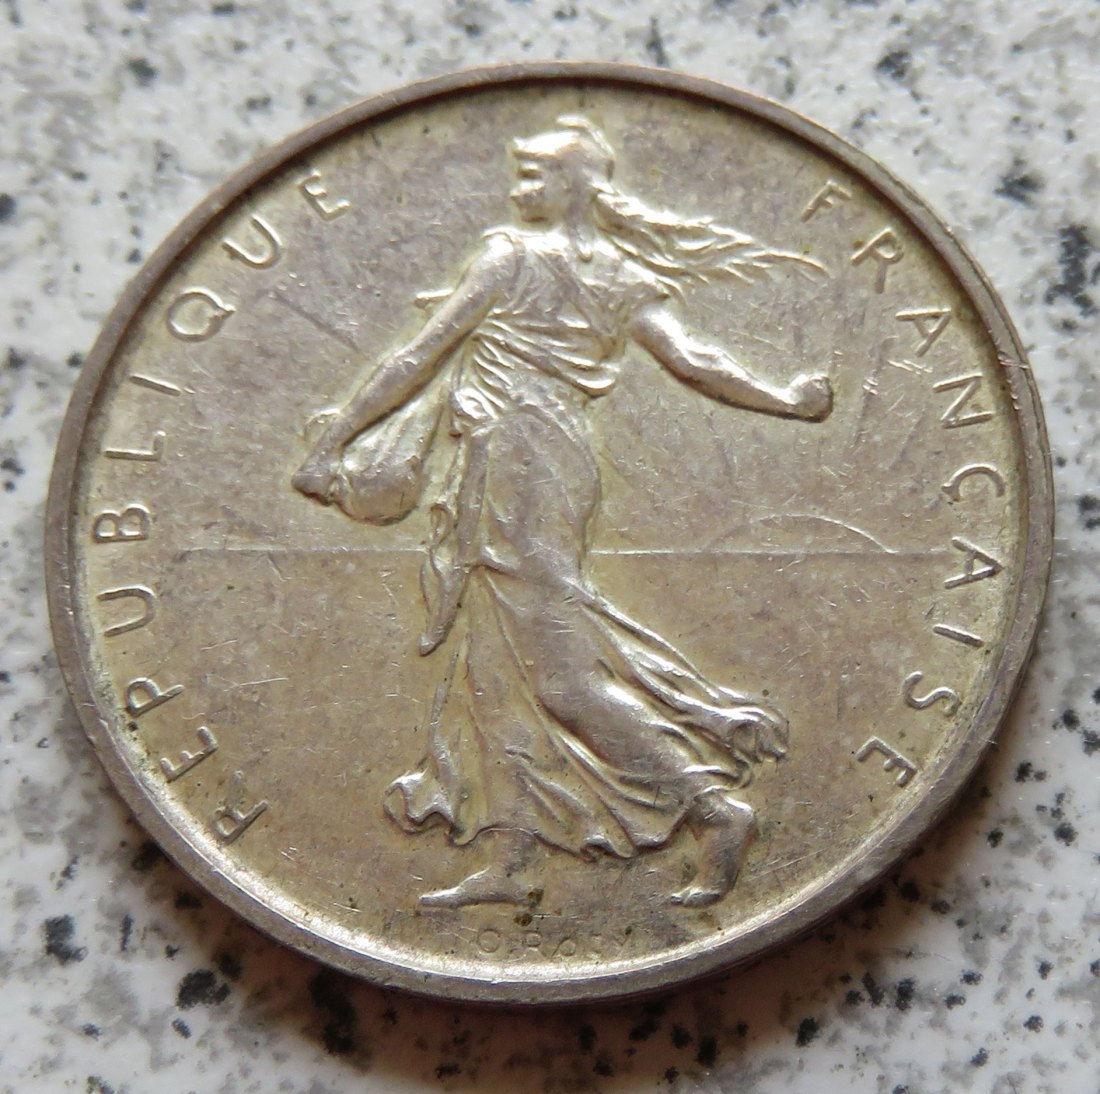  Frankreich 5 Francs 1967, Silber   